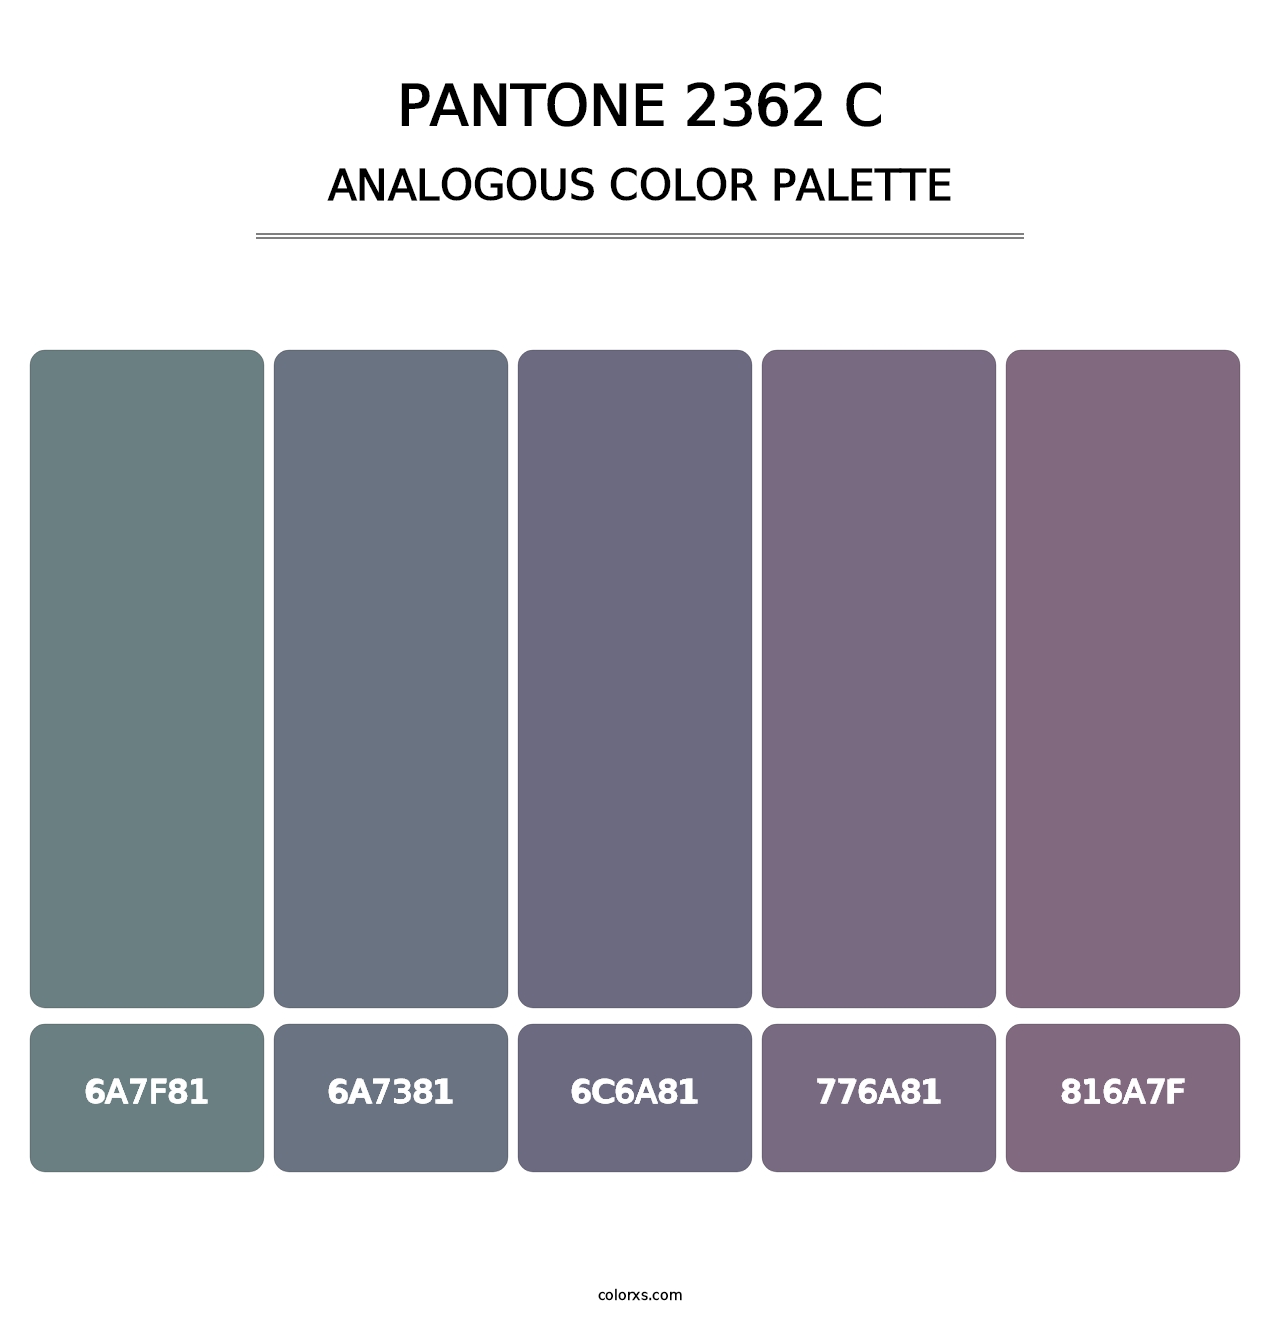 PANTONE 2362 C - Analogous Color Palette